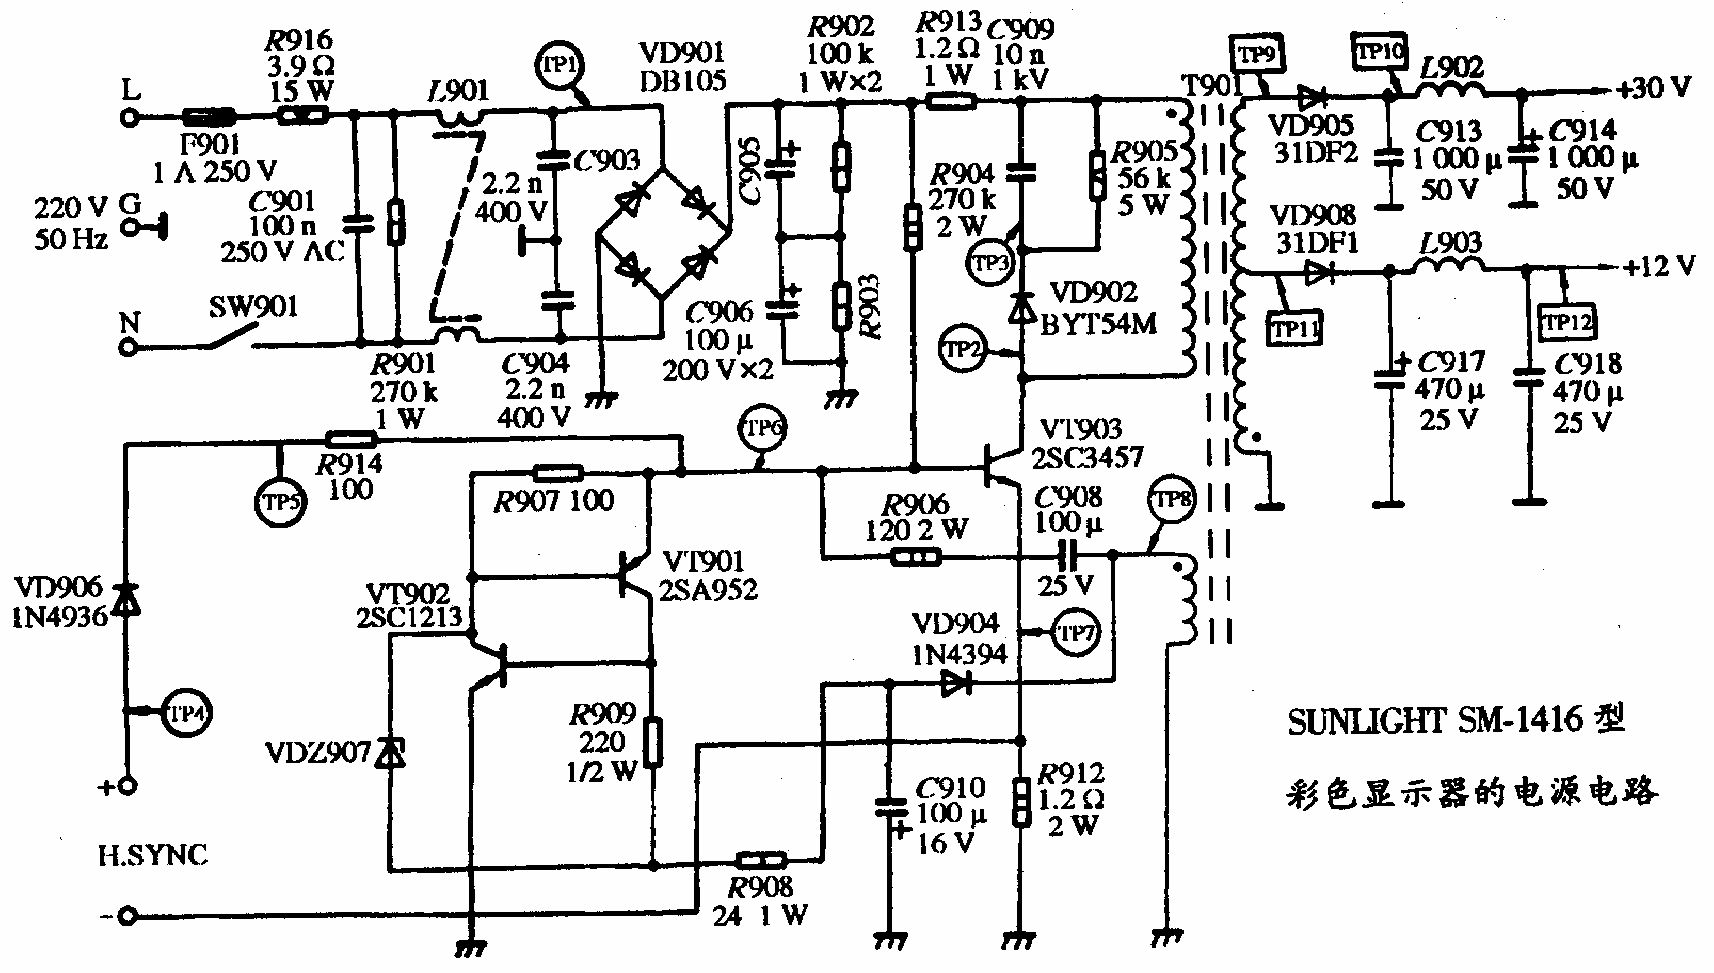 SUNLIHT SM-1416型彩色显示器的电源电路图